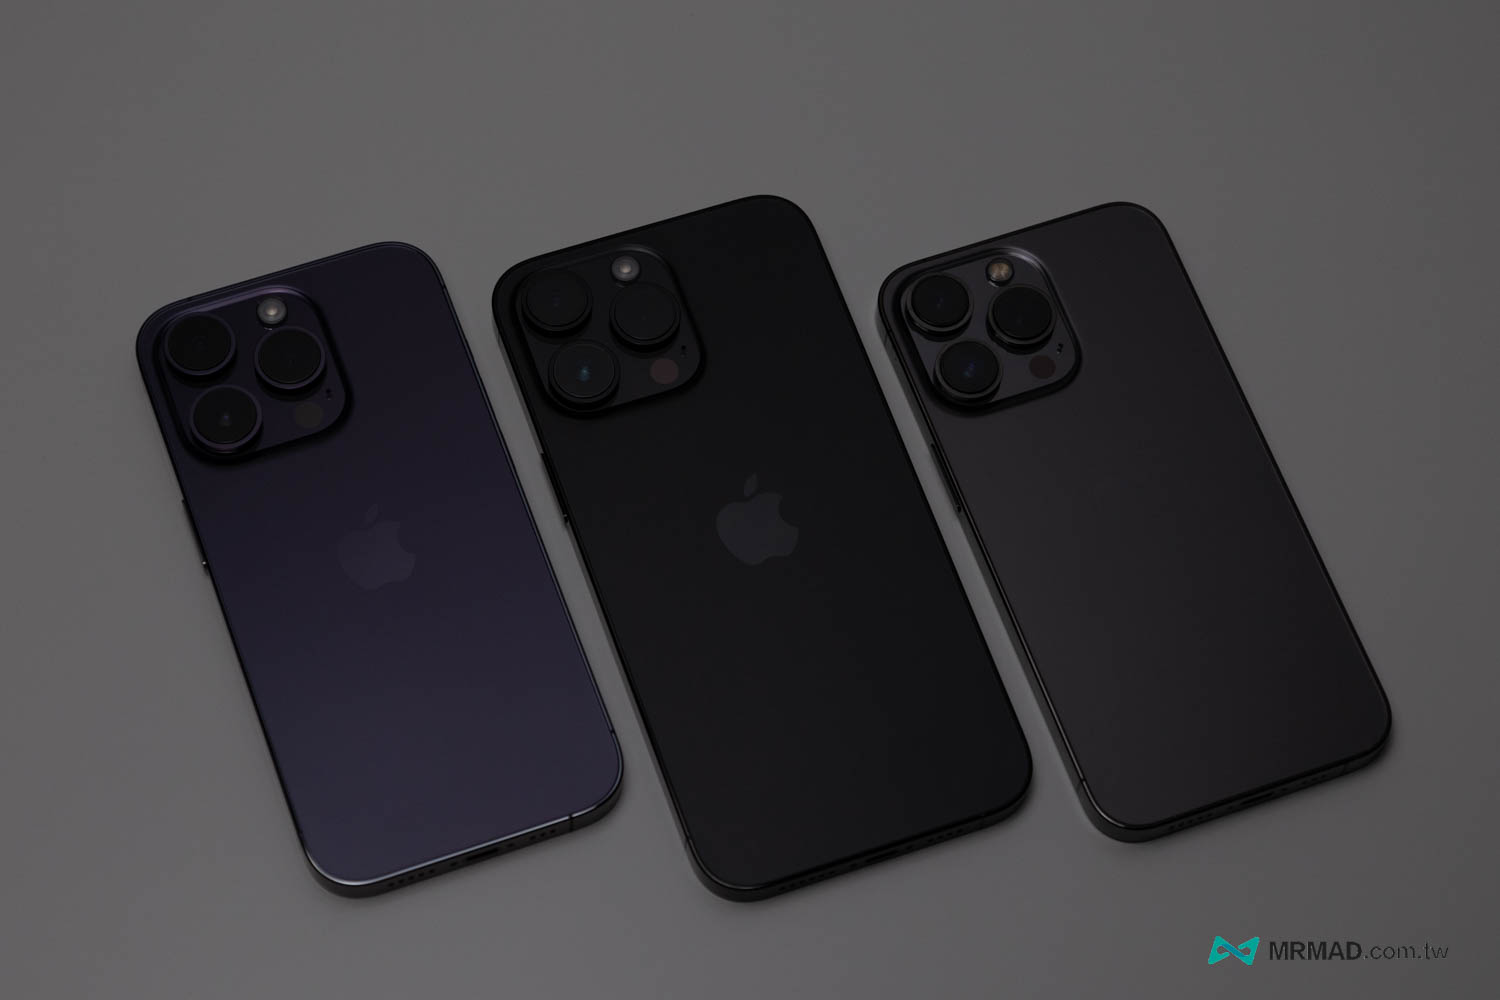 從左而右分別是 iPhone 14 Pro 暗紫色、iPhone 14 Pro Max 太空黑和iPhone 13 Pro 太空灰